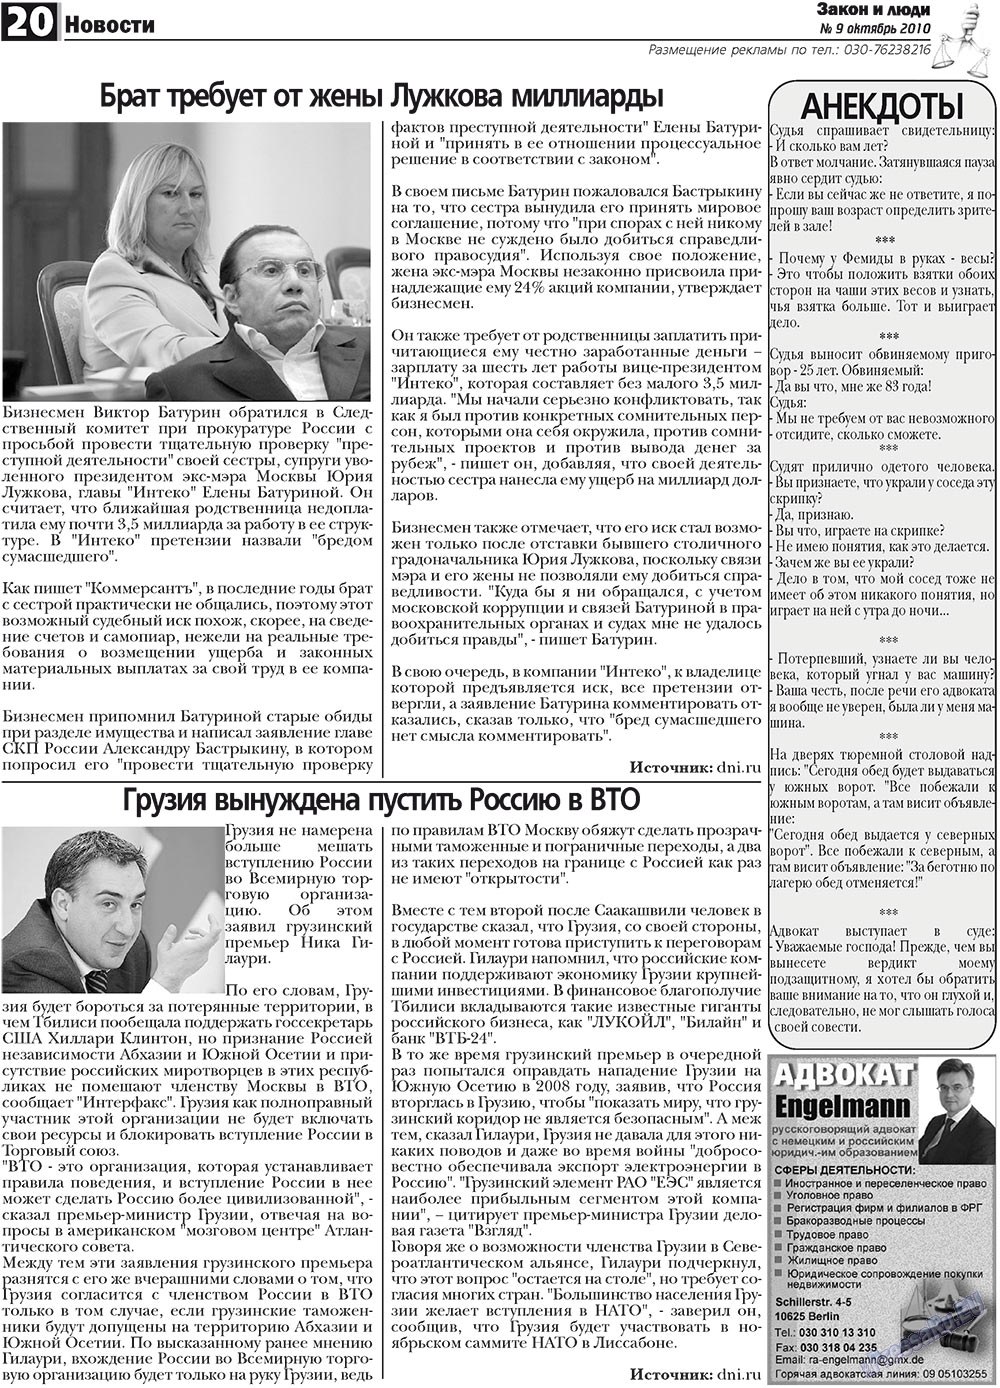 Закон и люди, газета. 2010 №9 стр.20